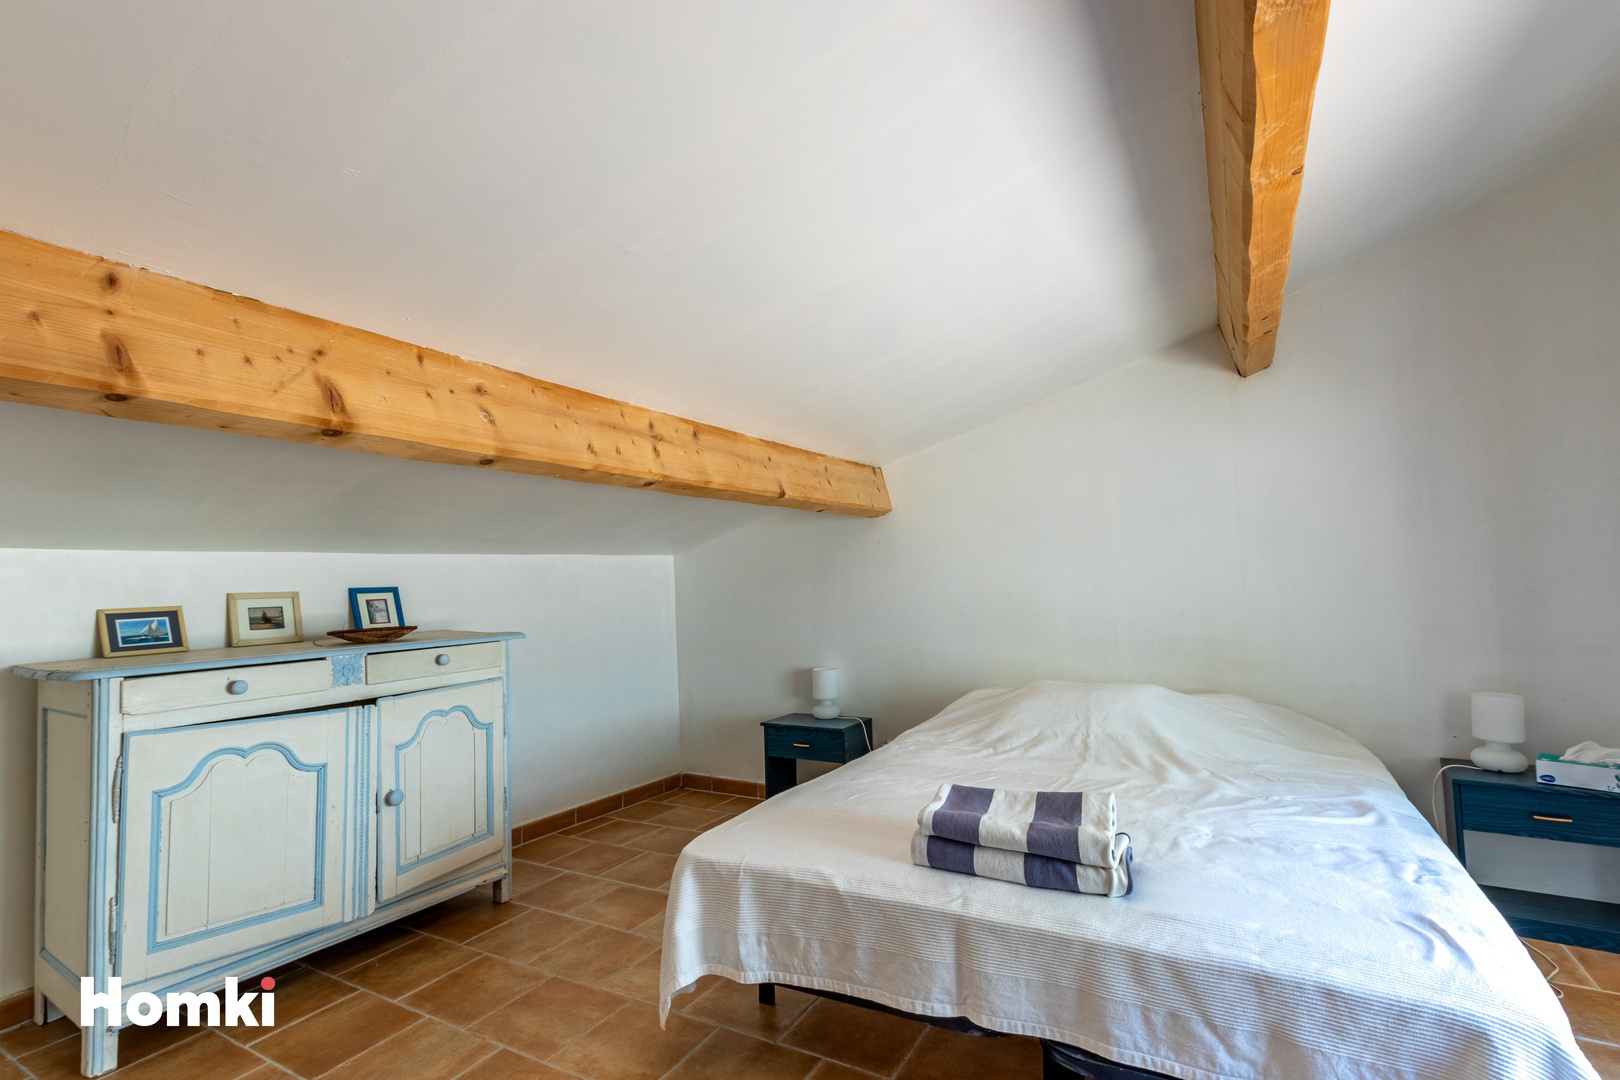 Homki - Vente Maison/villa  de 150.0 m² à Toulon 83200